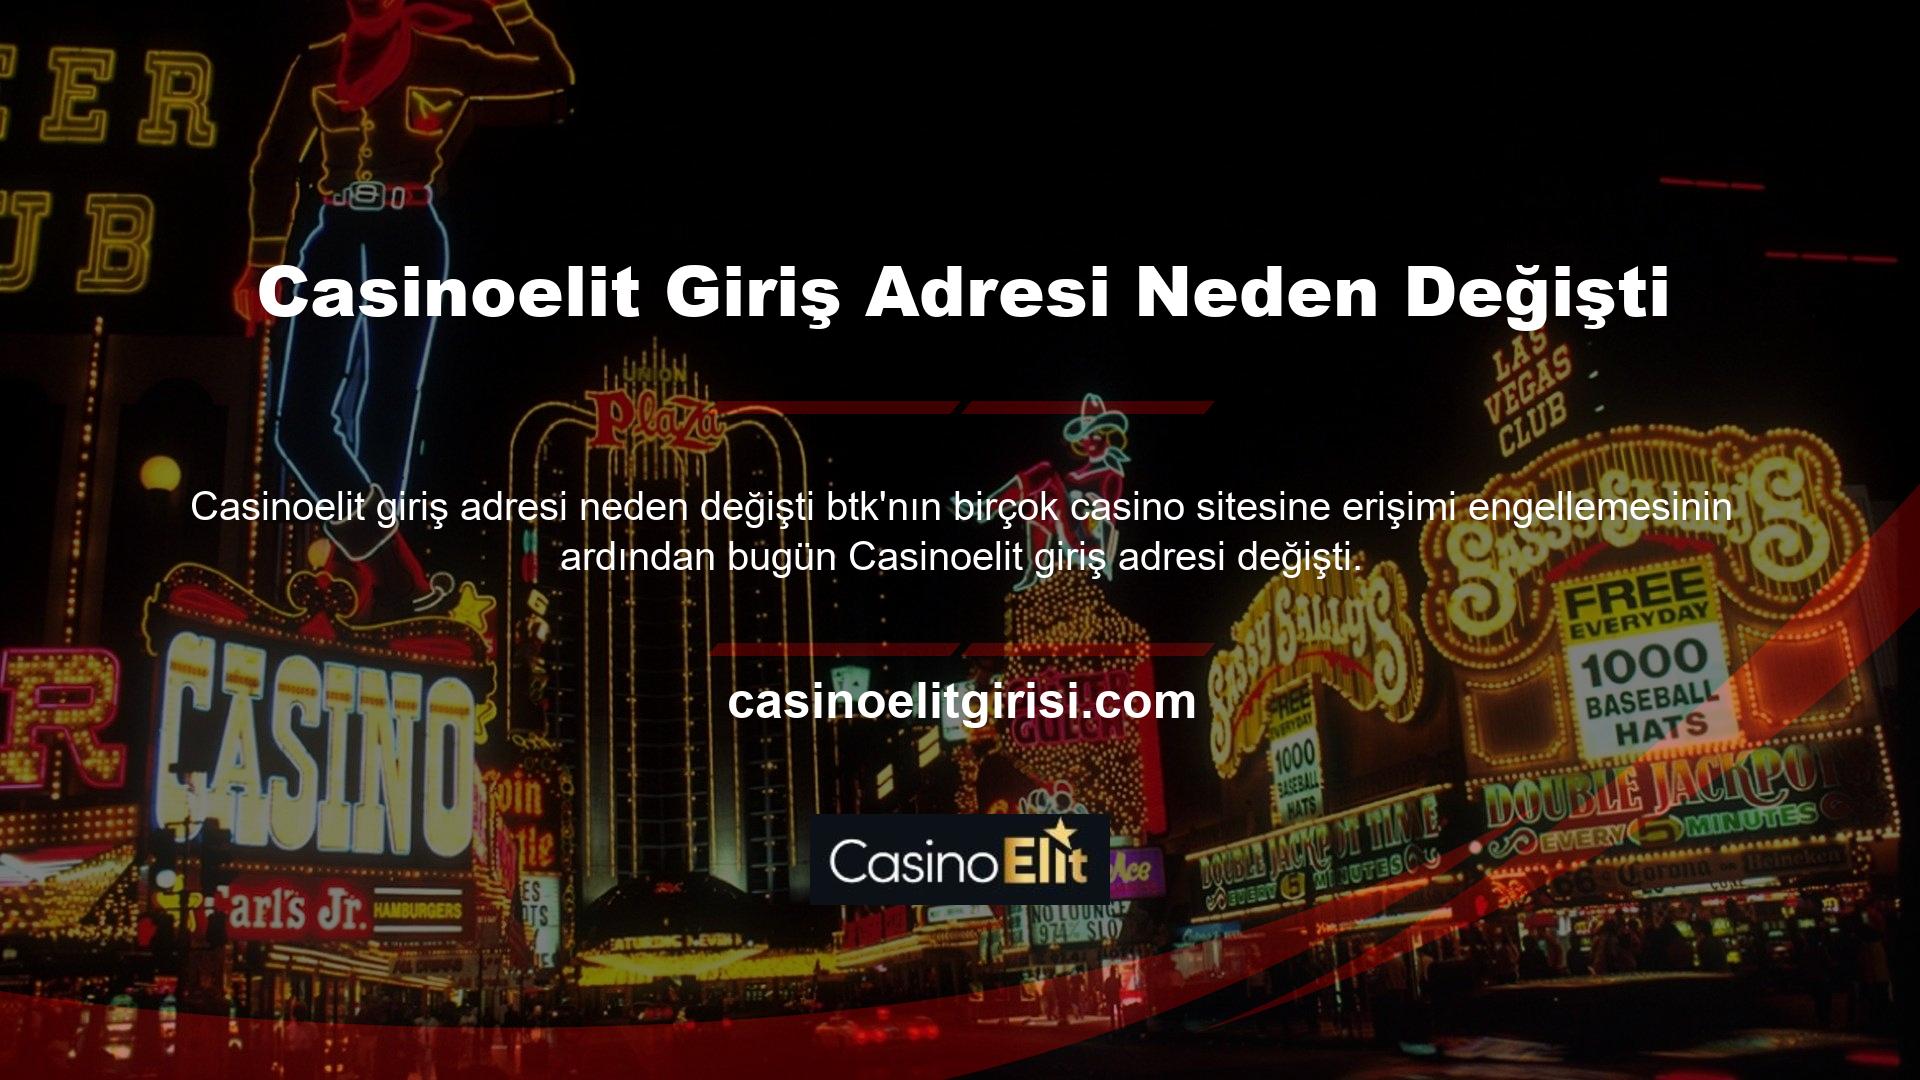 Casinoelit, mevcut giriş adresi olarak Casinoelit